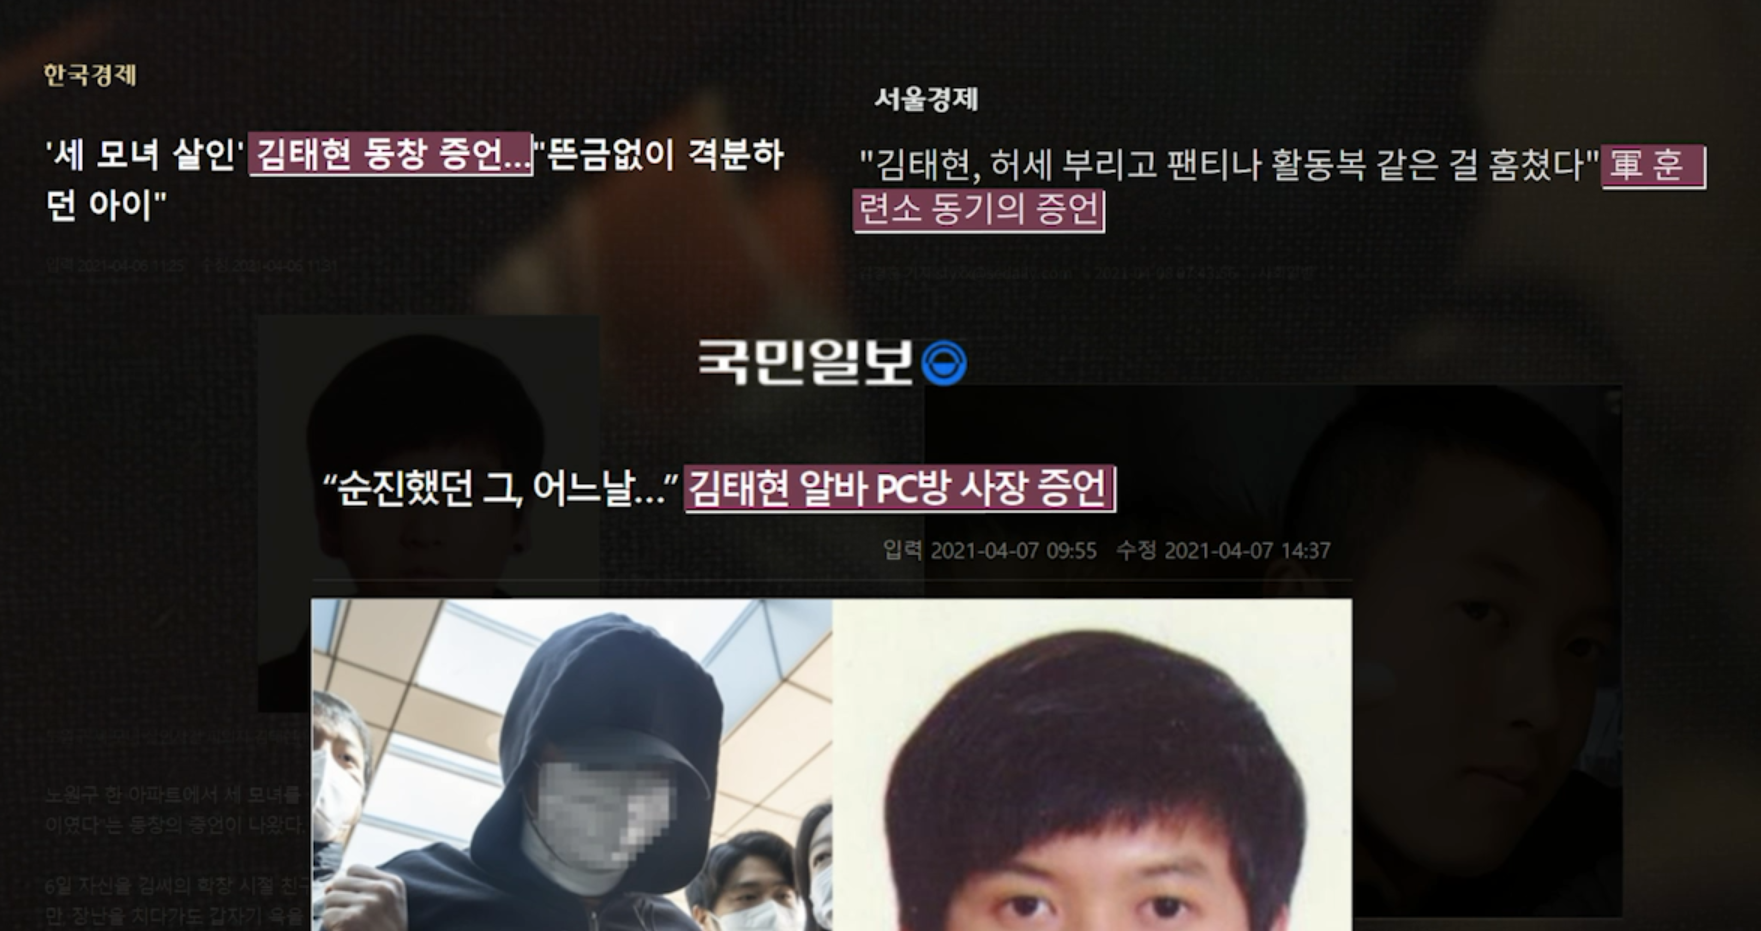 김태현의 과거 행적에 대해 다룬 기사.